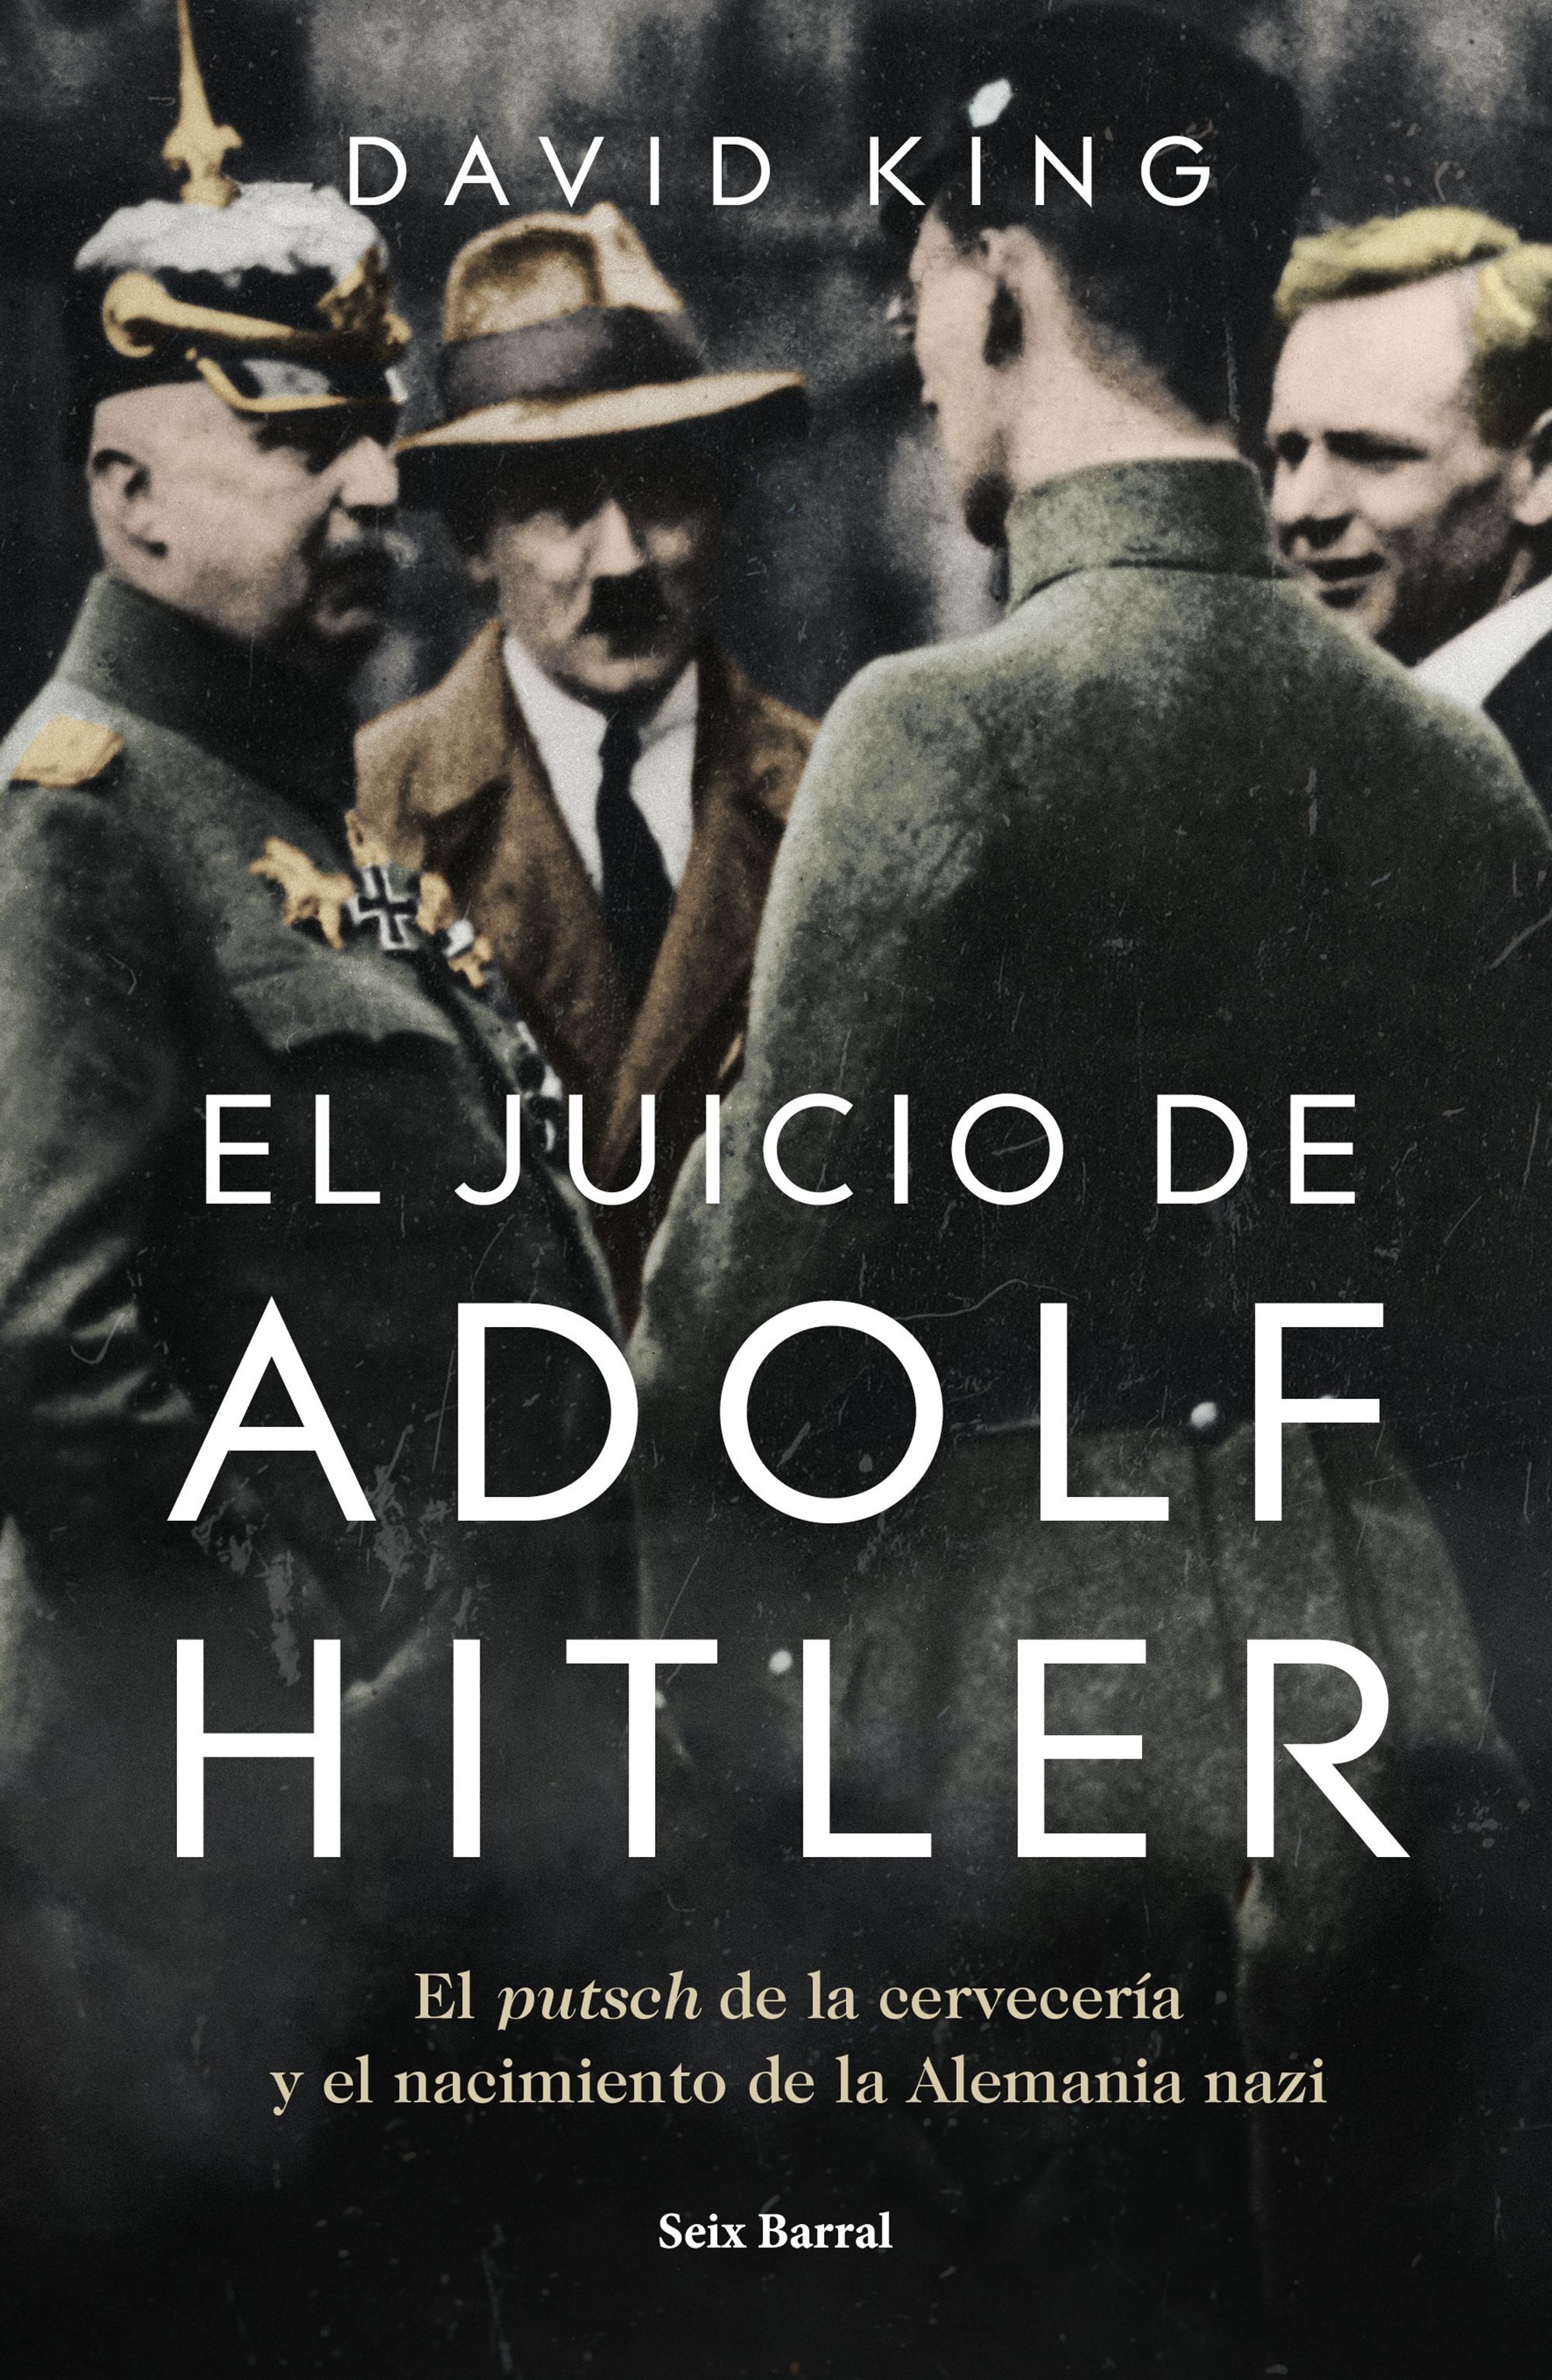 El novelista David King analiza el fallido intento golpista de Hitler y su juicio posterior